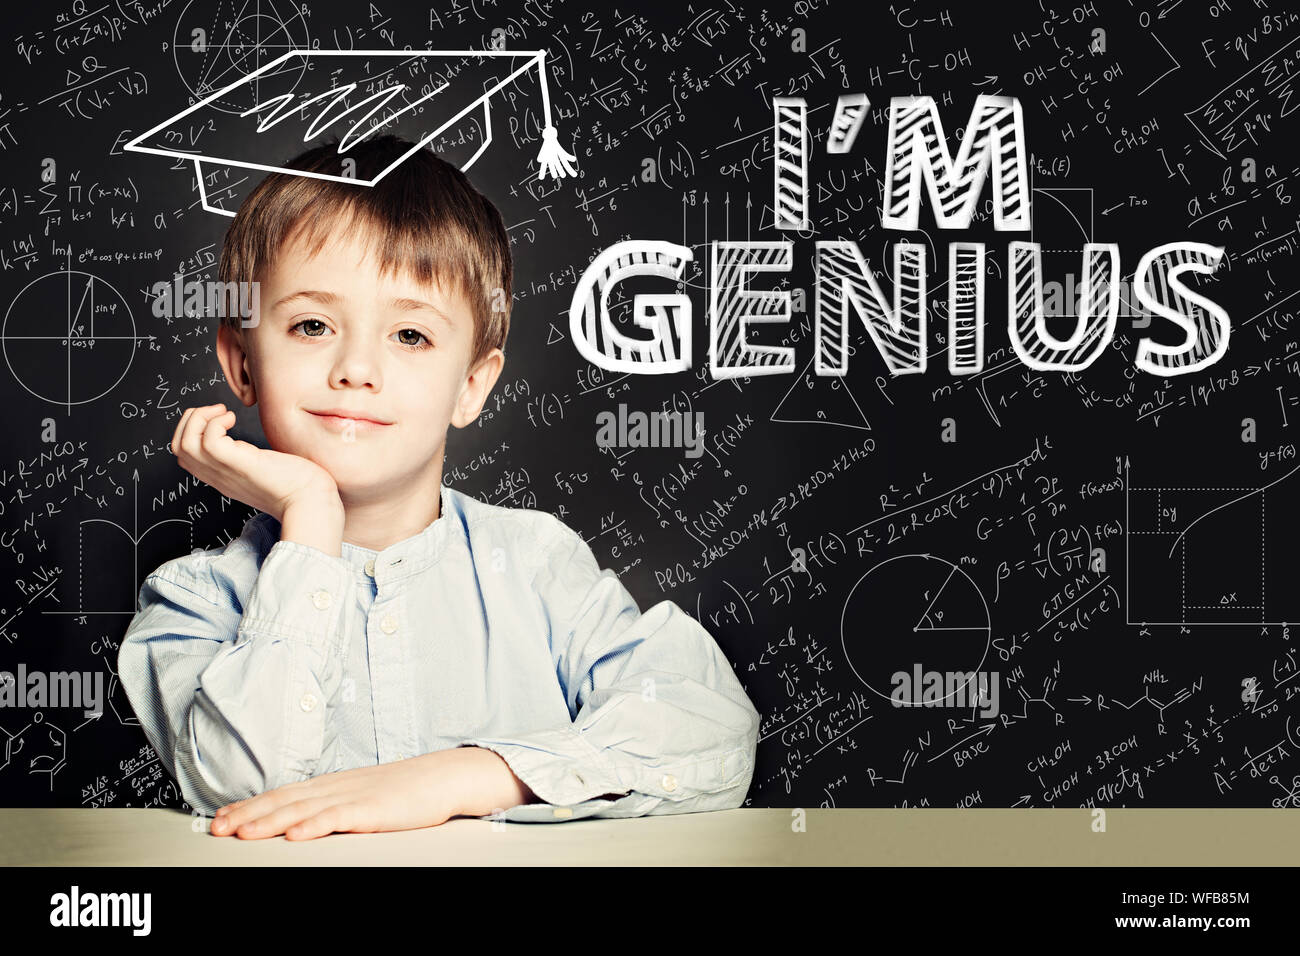 Glückliche Schüler Junge auf blackboard Hintergrund mit Wissenschaft und Mathematik Formel Stockfoto